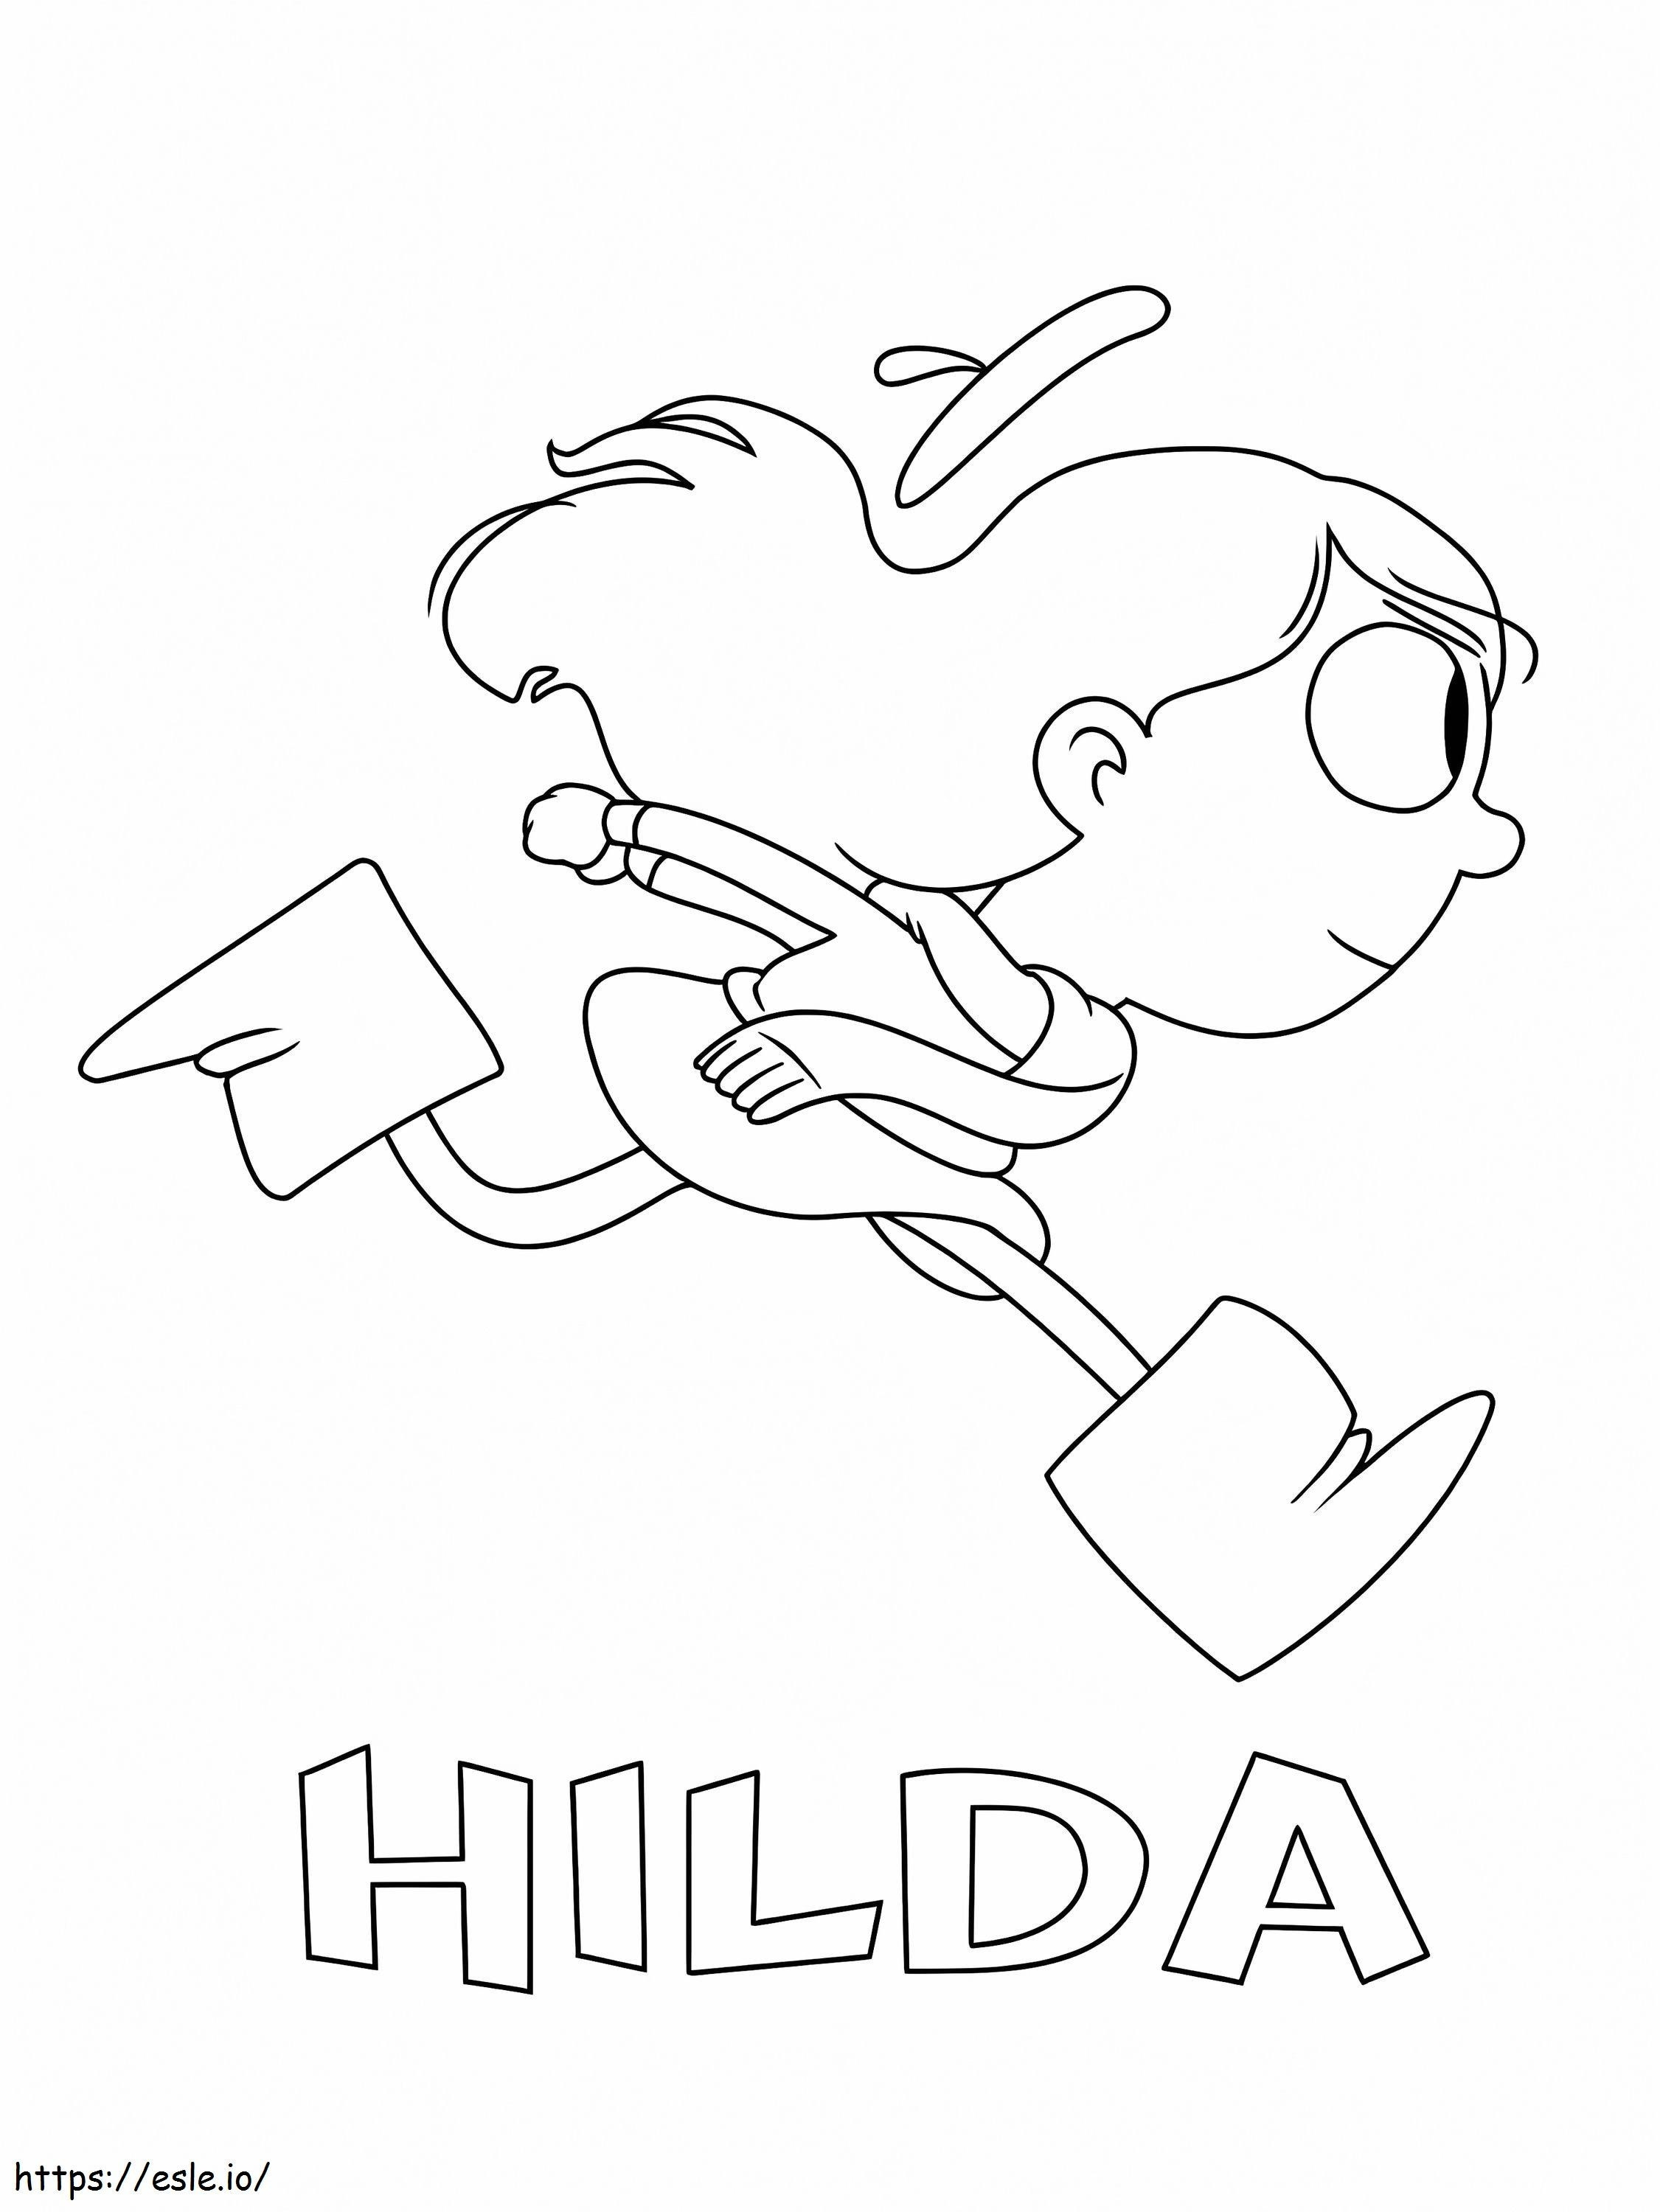 Hilda läuft ausmalbilder